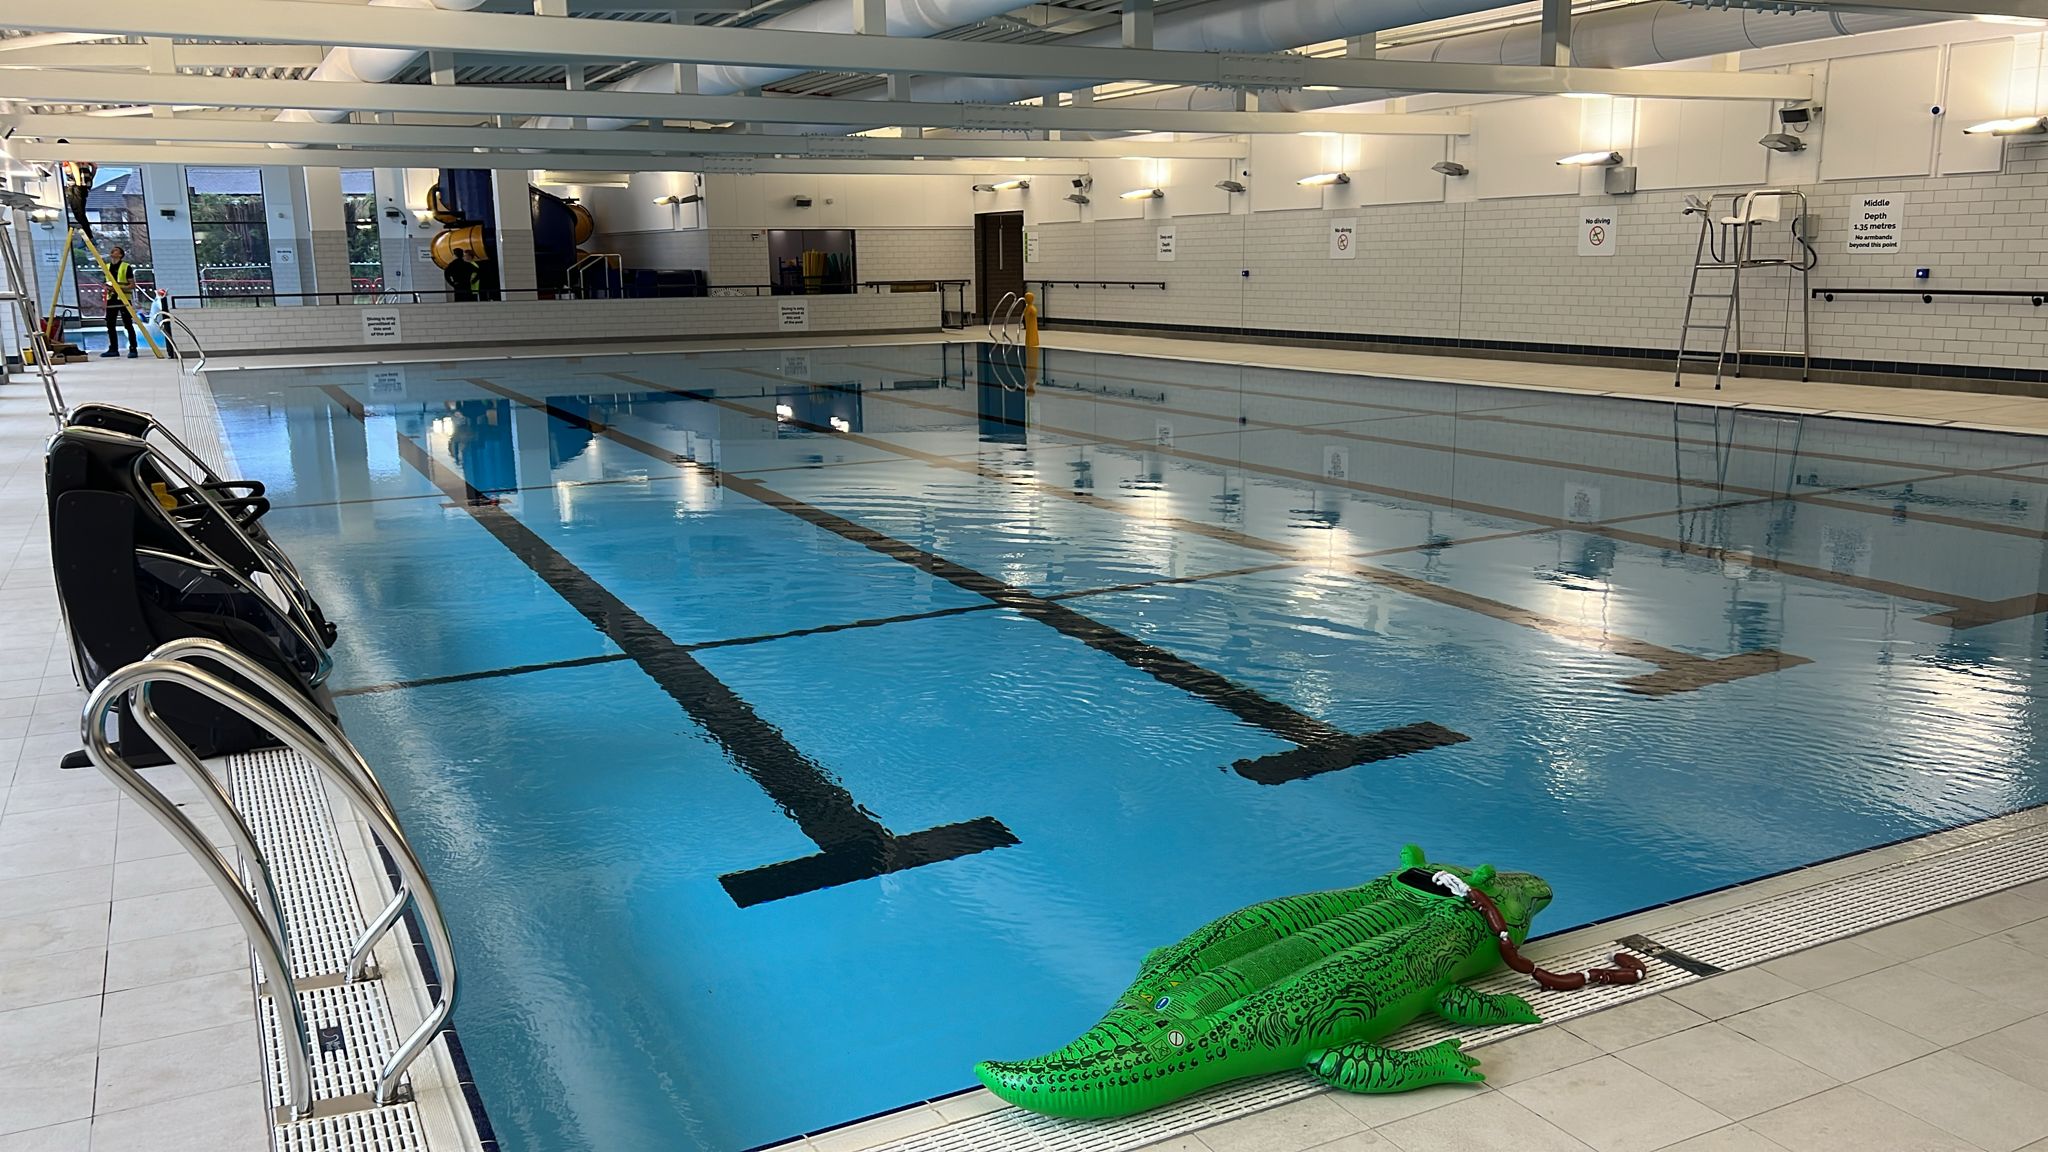 The new Knaresborough swimming pool